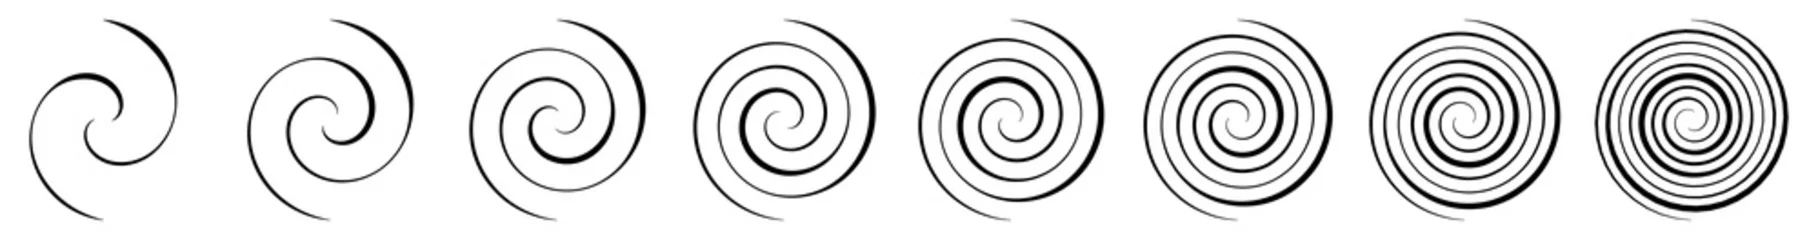 Tuinposter Spiral, swirl, twirl and whirl element. Helix, volute ripple, vortex shape © Pixxsa